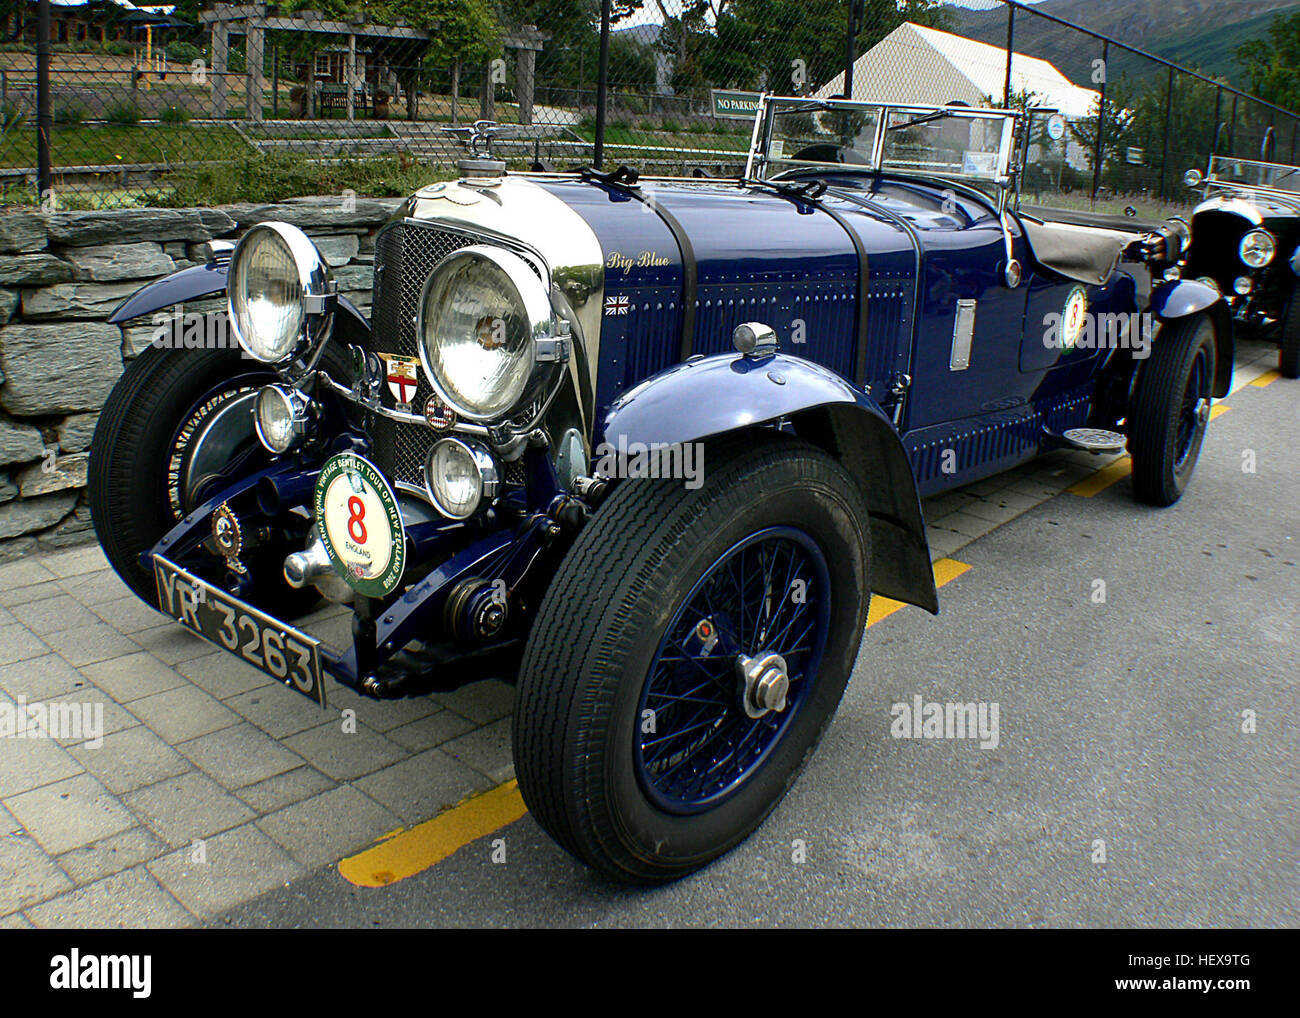 El ordinario Bentley 6½ litro y el alto rendimiento velocidad Bentley seis eran los deportes y los coches de lujo basado en chasis de rodadura de Bentley en producción desde 1926 hasta 1930. La velocidad 6, introducida en 1928, se convertiría en la más exitosa racing Bentley. Dos Bentley Speed 6 pasó a ser conocido como el Blue Train Bentleys Woolf Barnato propietario después de su participación en el tren azul de carreras de 1930. Foto de stock